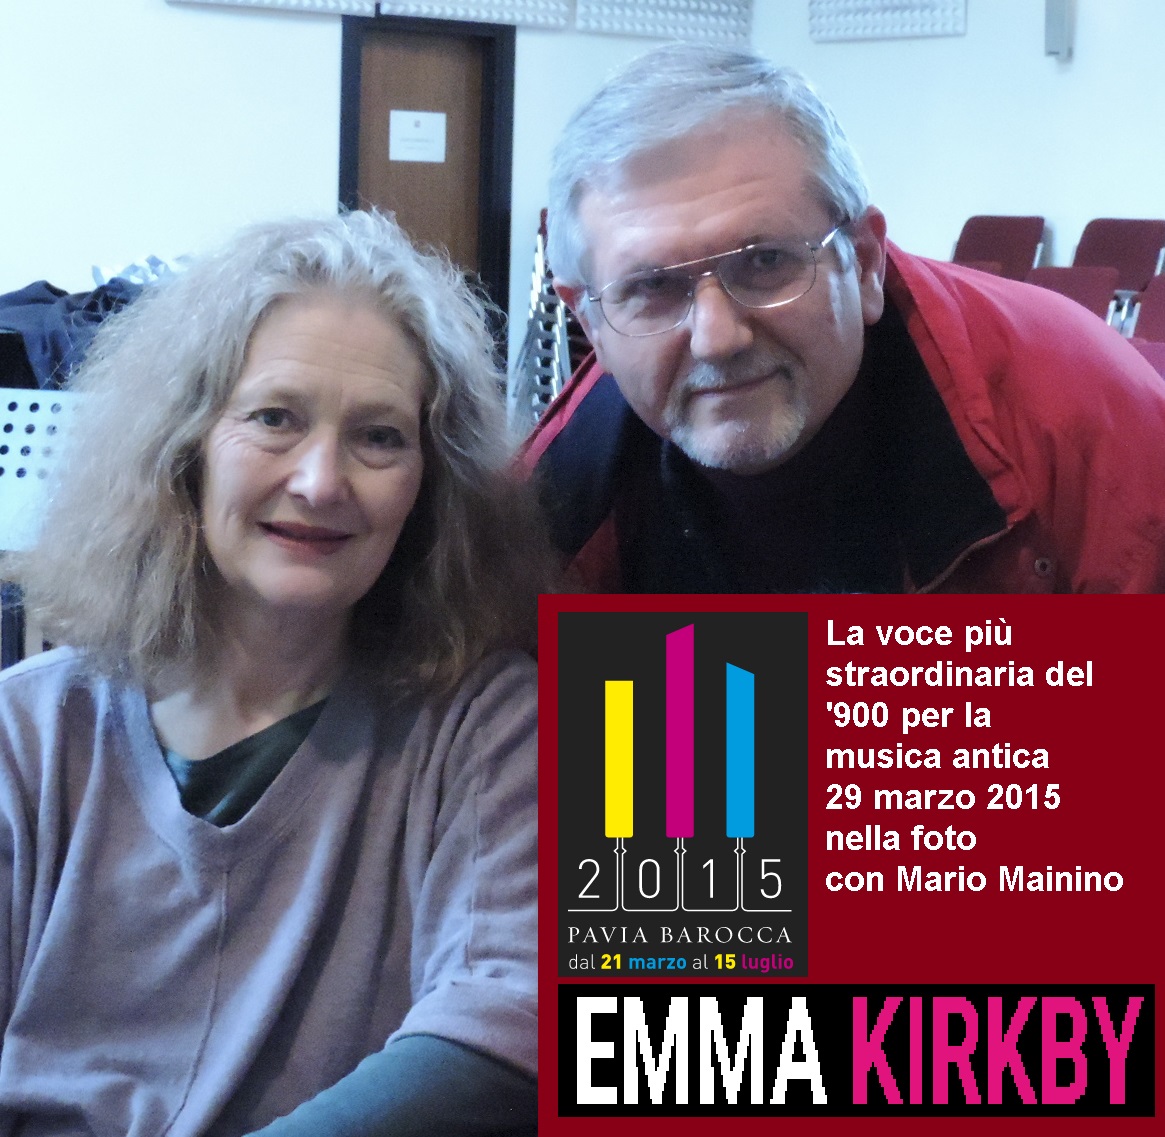 Nella foto Emma kirkby con Mario Mainino